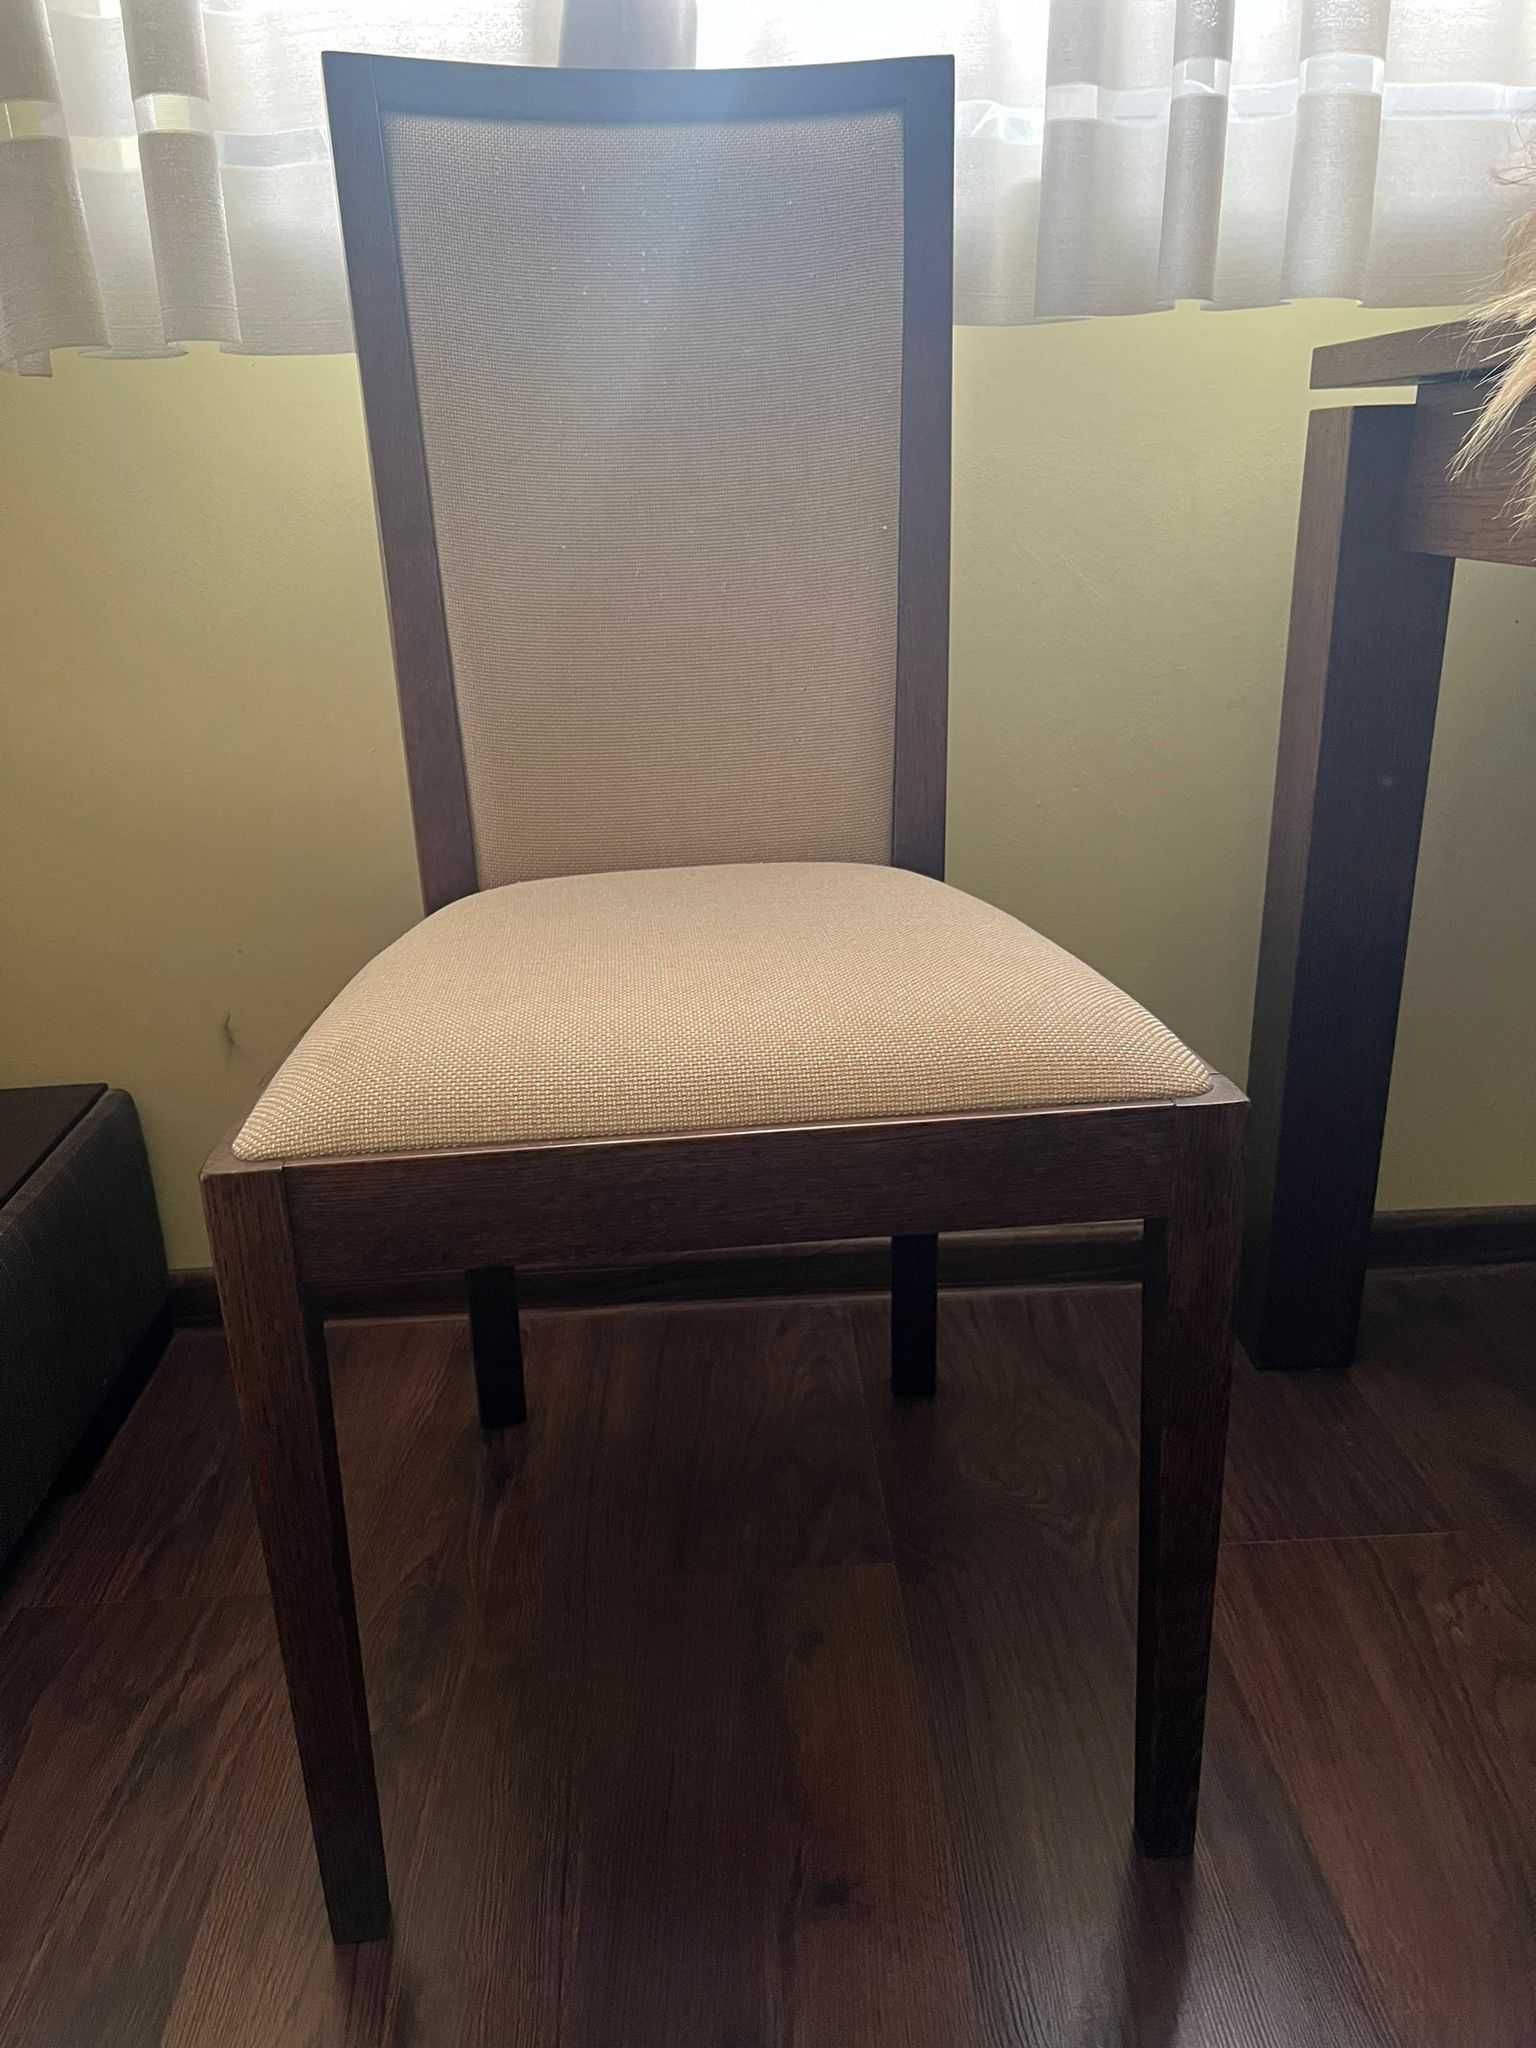 Meble drewniane: komoda, stół,krzesła, półka, szafka, szafka pod tv